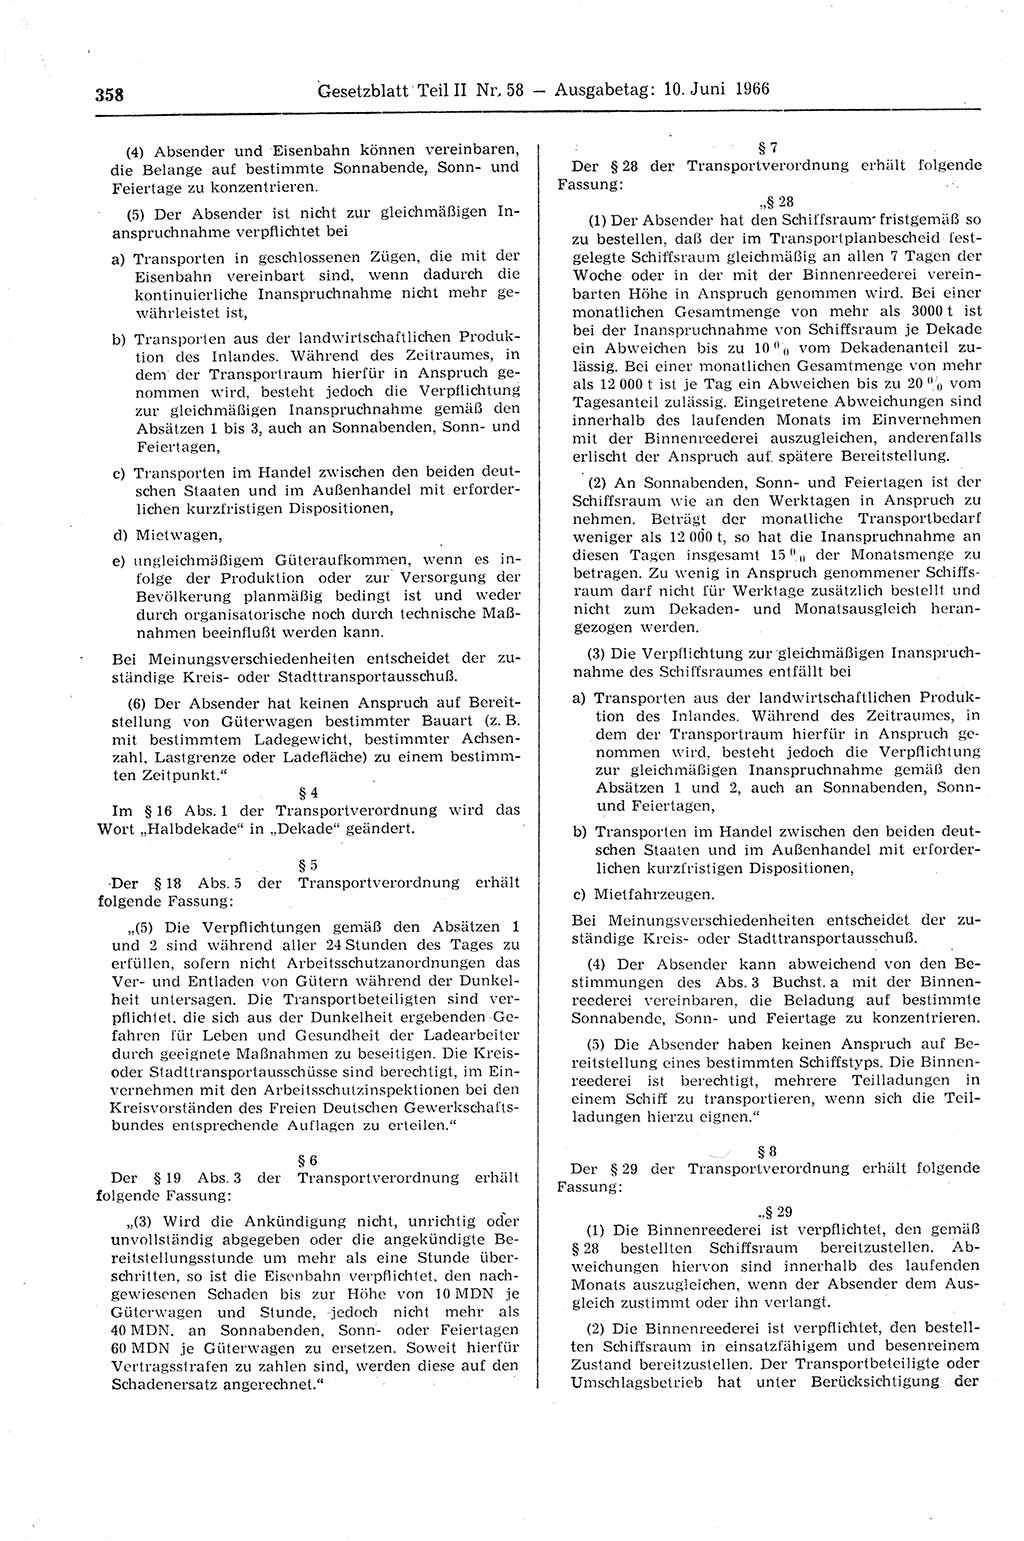 Gesetzblatt (GBl.) der Deutschen Demokratischen Republik (DDR) Teil ⅠⅠ 1966, Seite 358 (GBl. DDR ⅠⅠ 1966, S. 358)